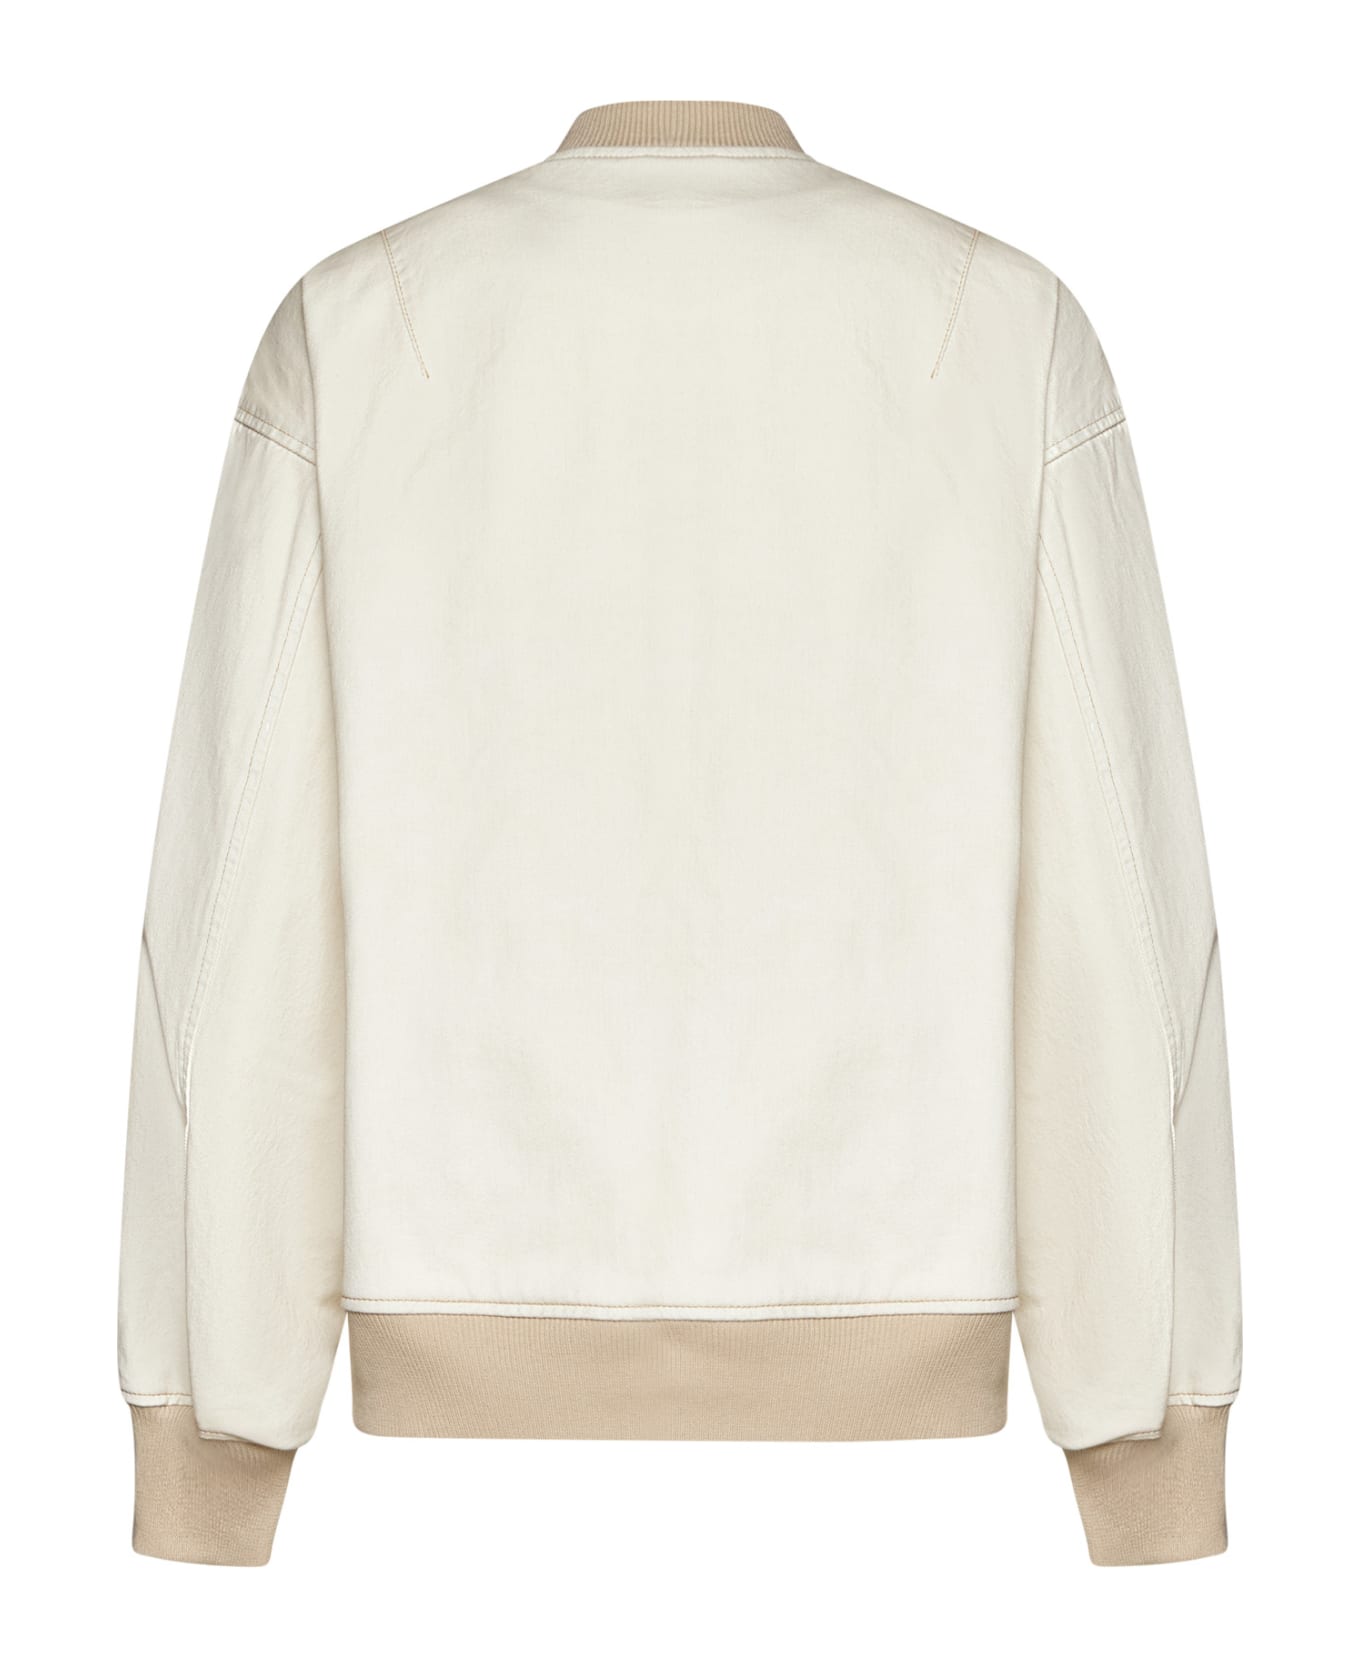 SEMICOUTURE Jacket - Bleach white